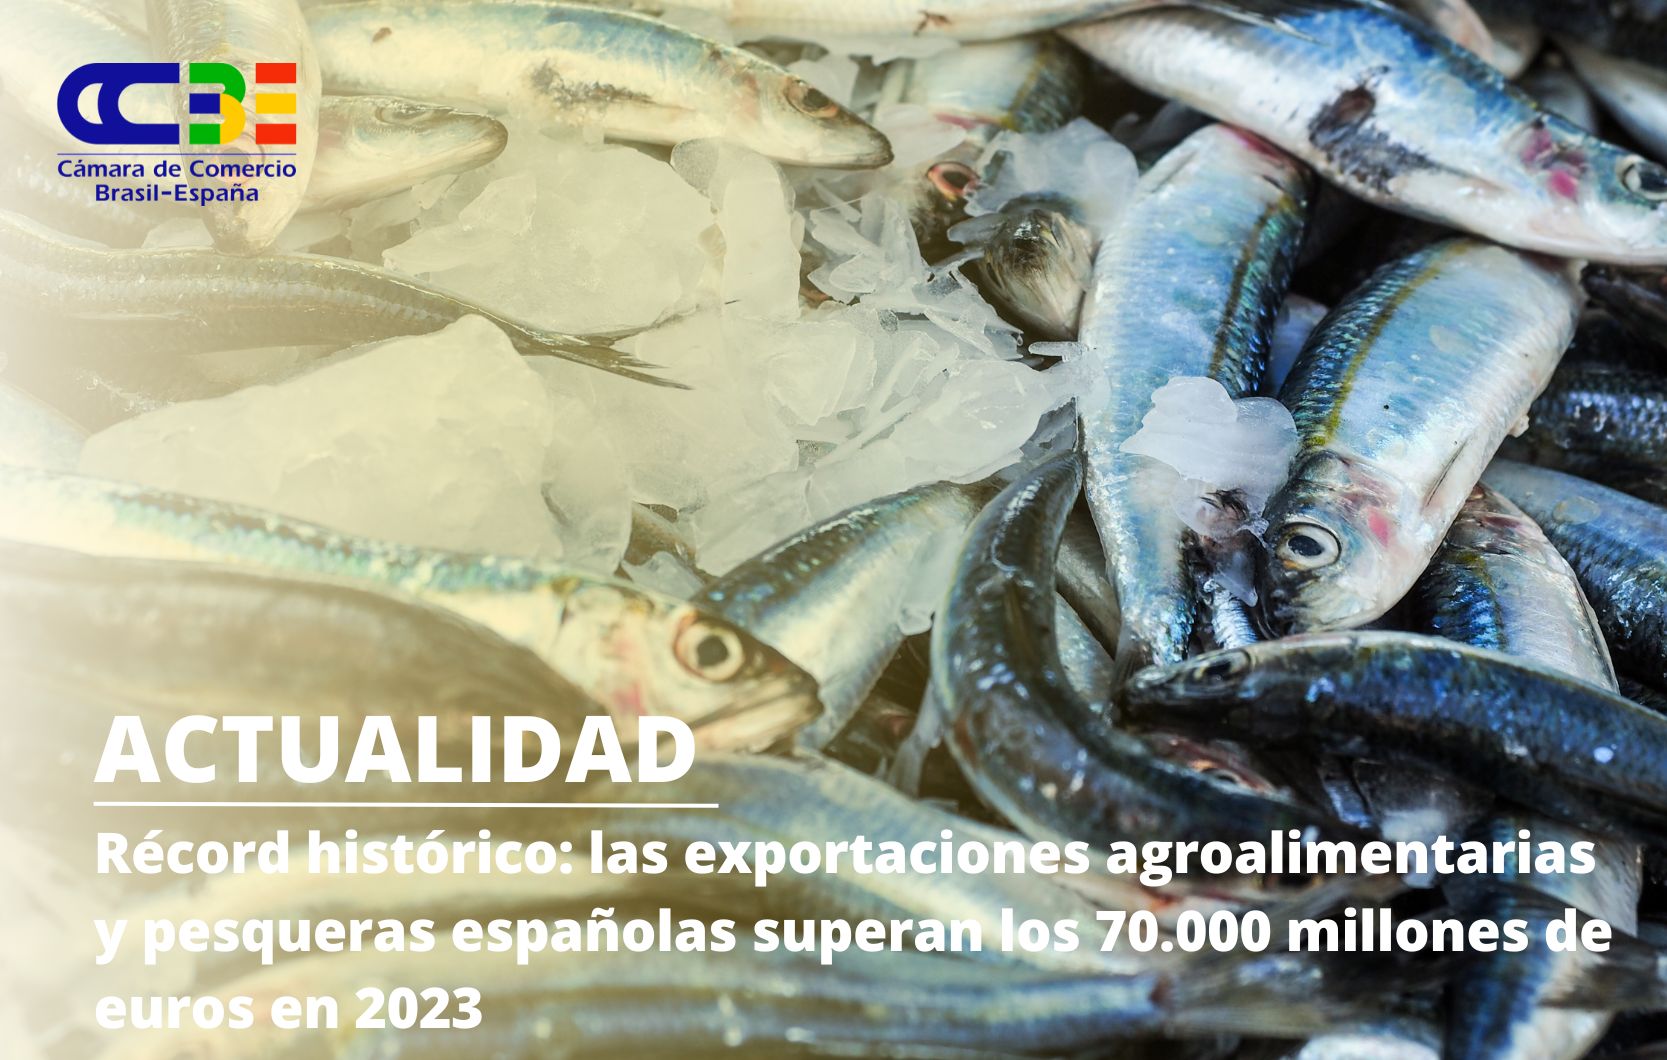 Récord histórico: las exportaciones agroalimentarias y pesqueras españolas superan los 70.000 millones de euros en 2023